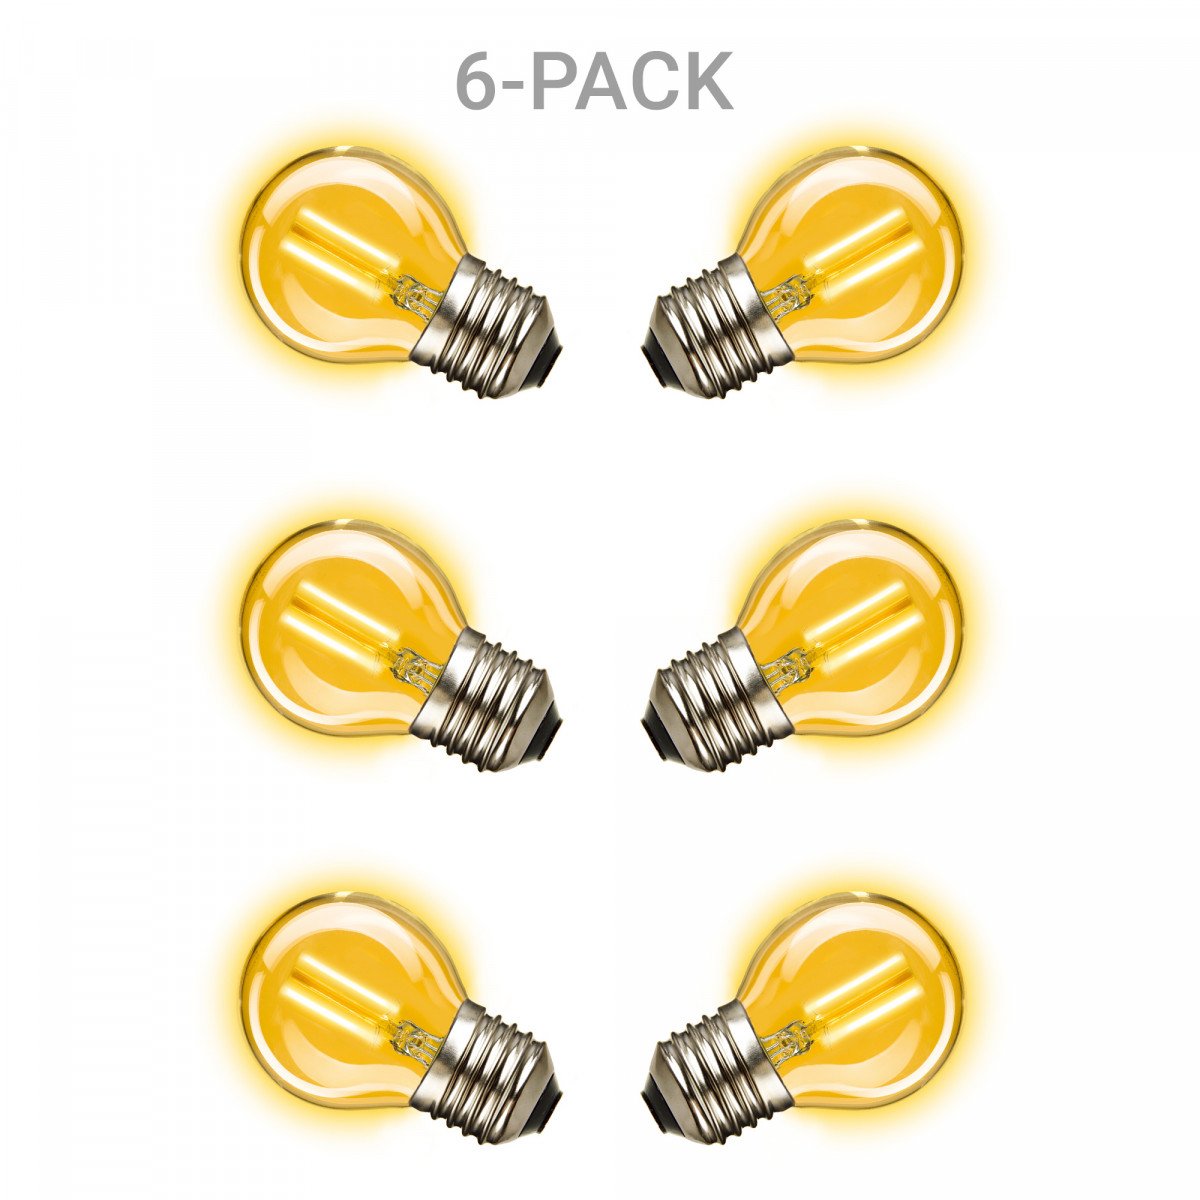 Mini Gold LED Leuchtmittel 6er-Pack